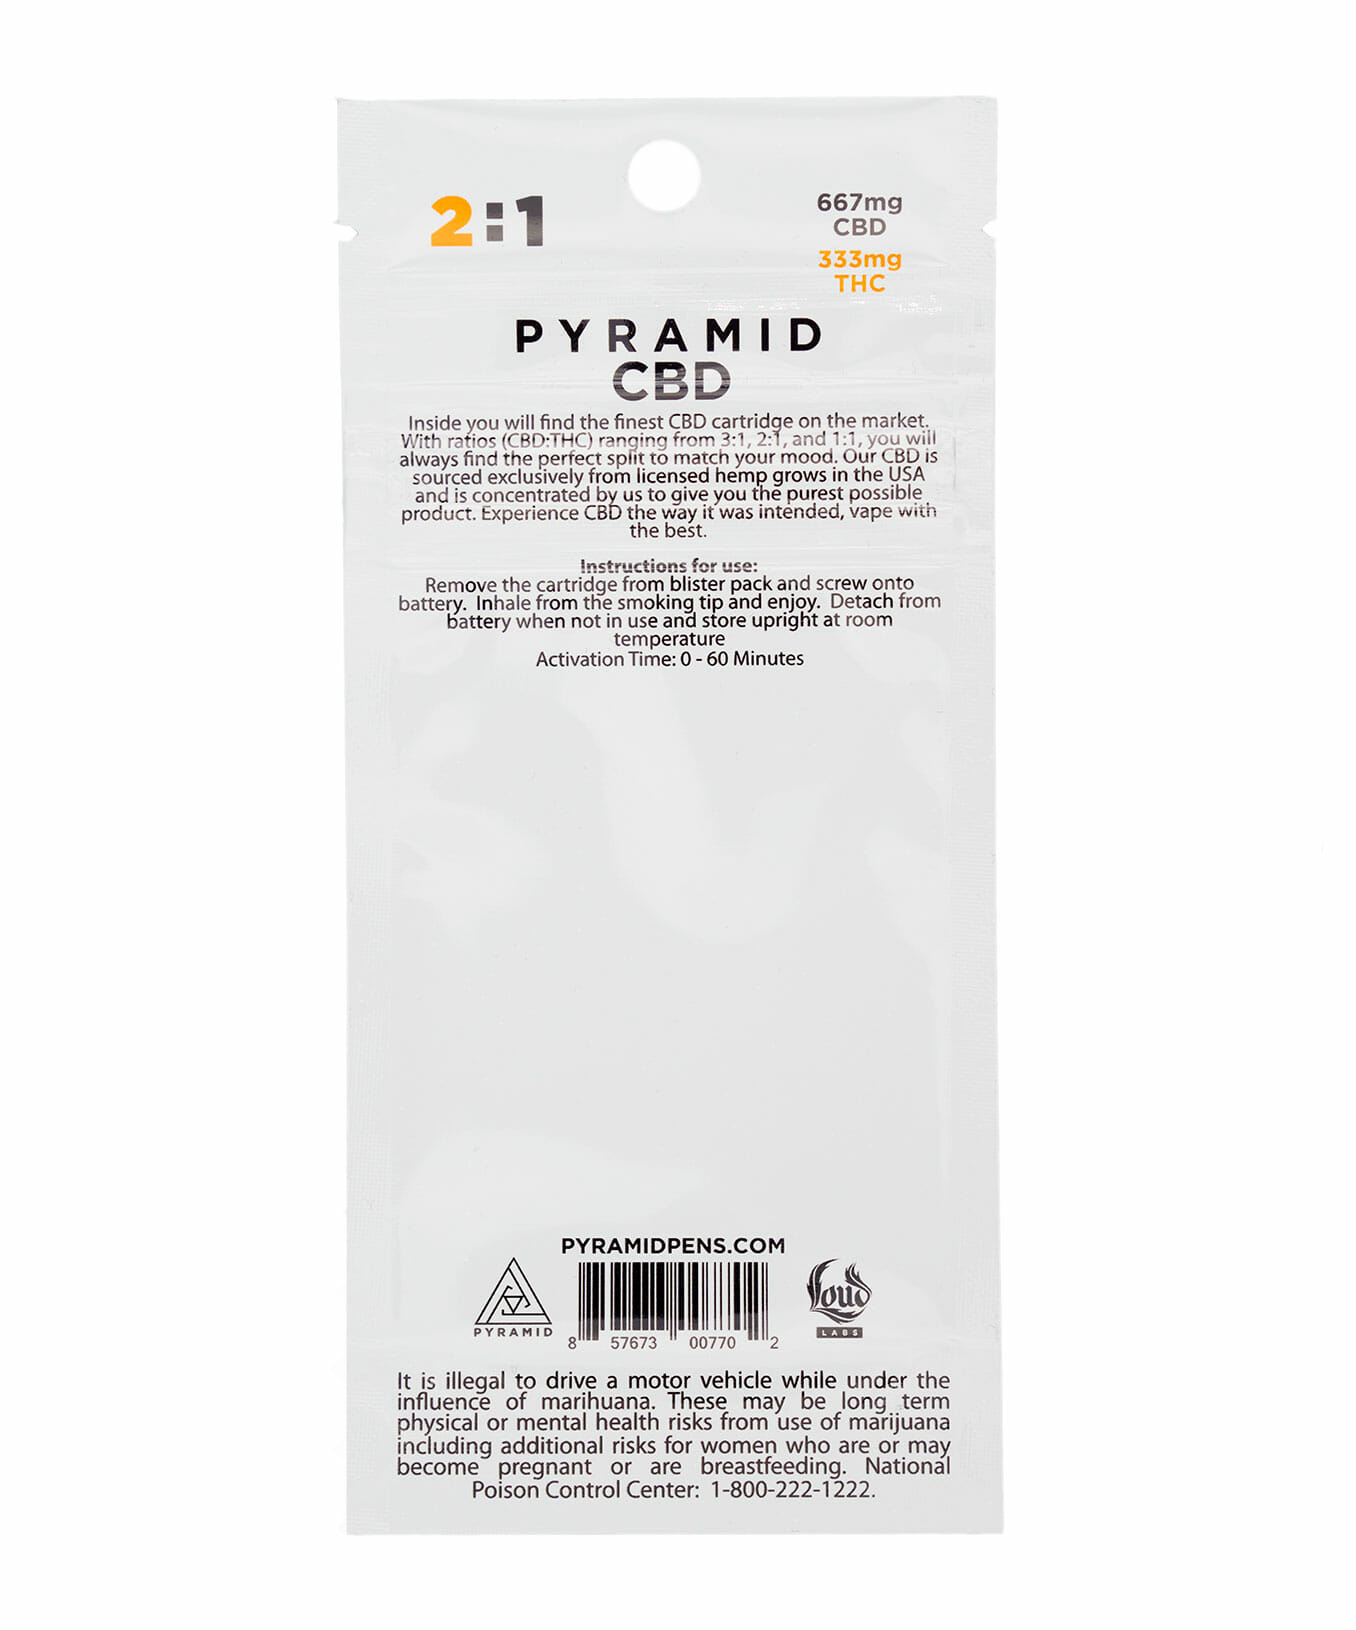 Pyramid CBD/THC 2:1 cartridge